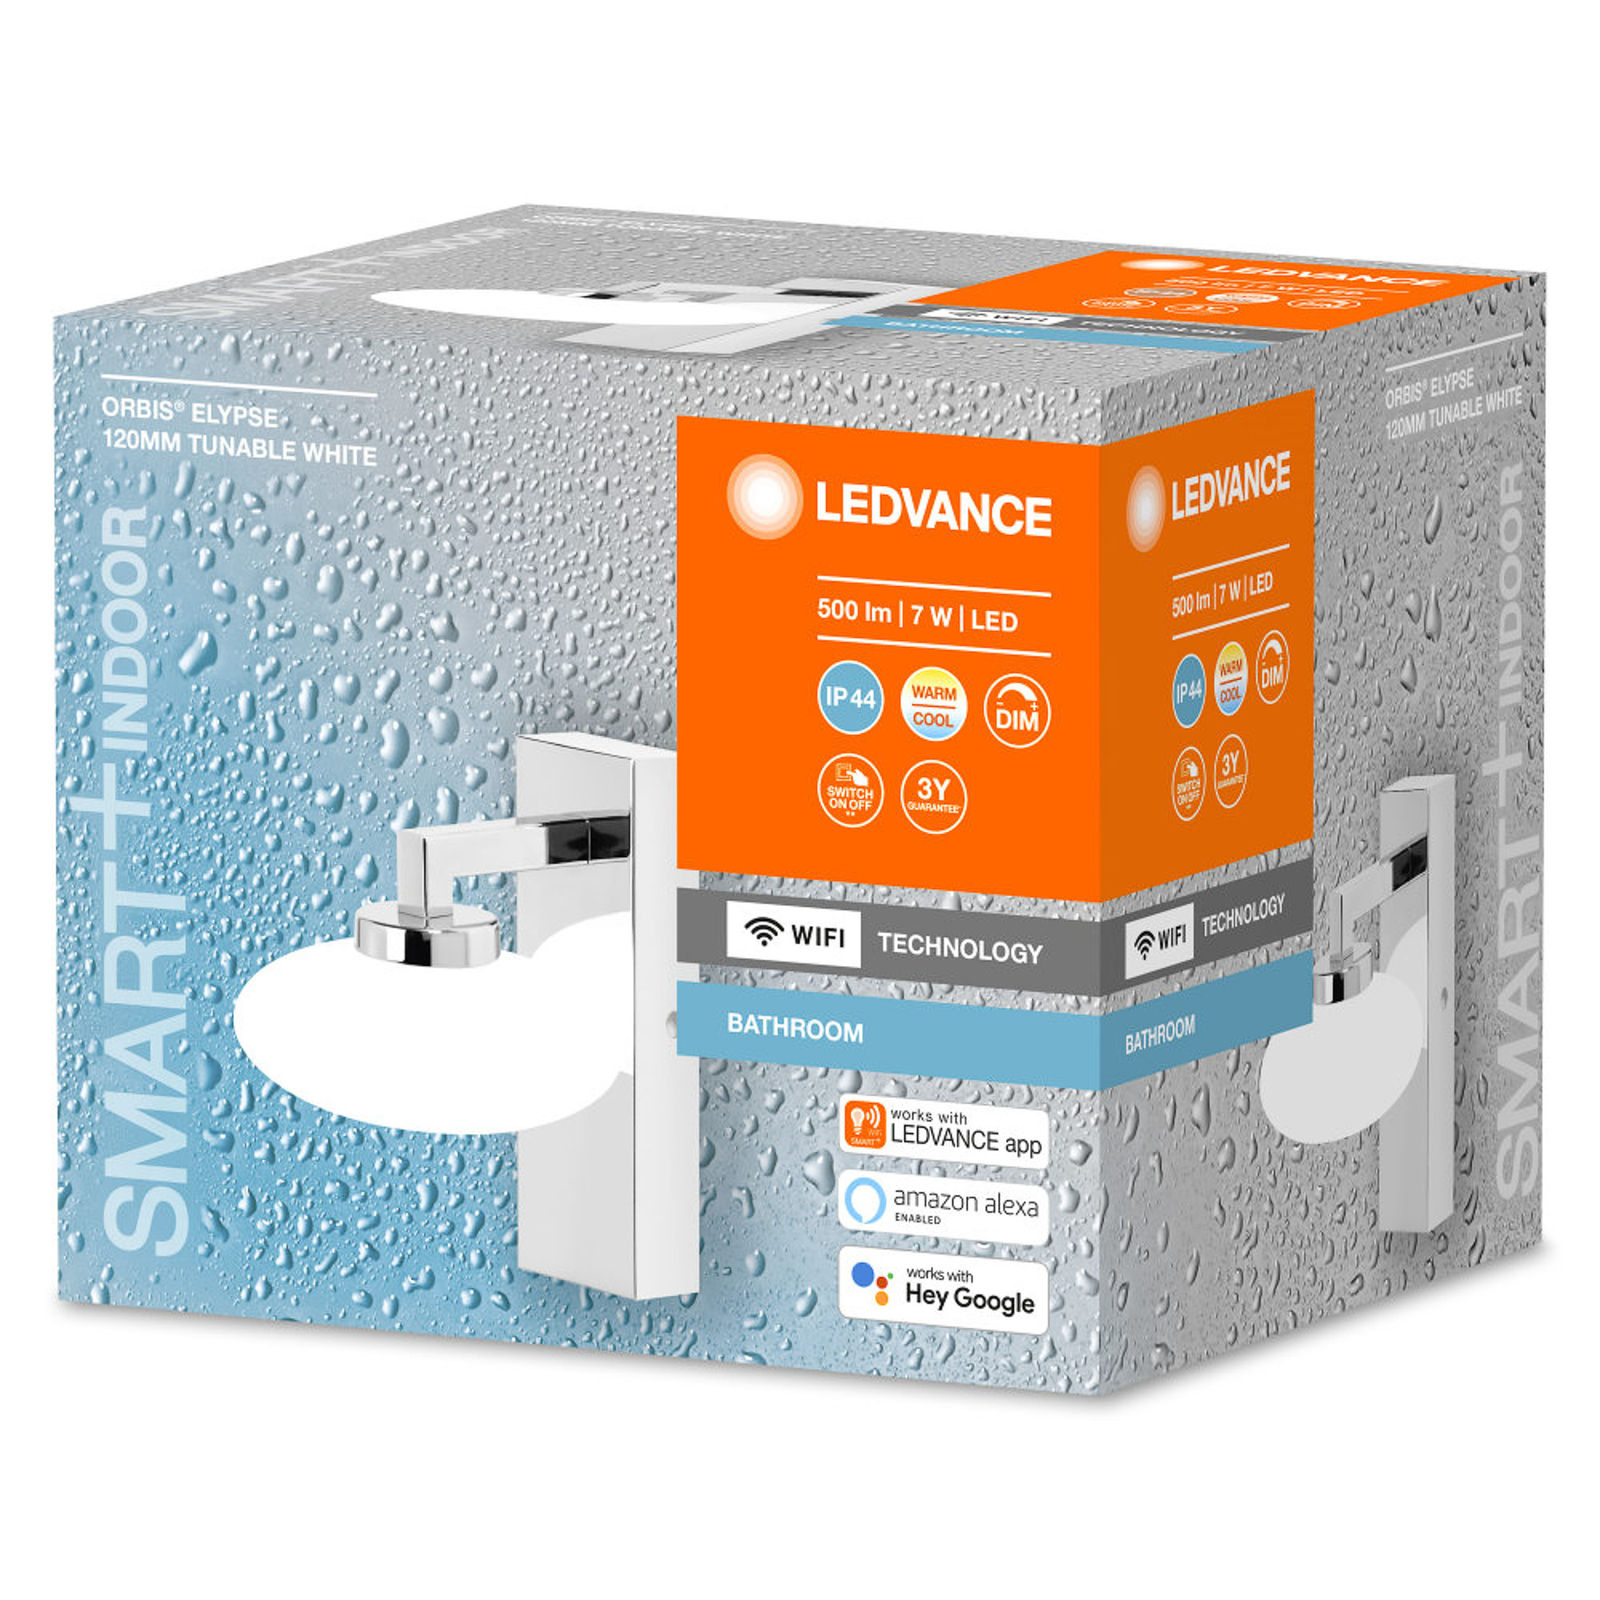 LEDVANCE SMART+ WiFi Orbis Wall Elypse, 1 lampa